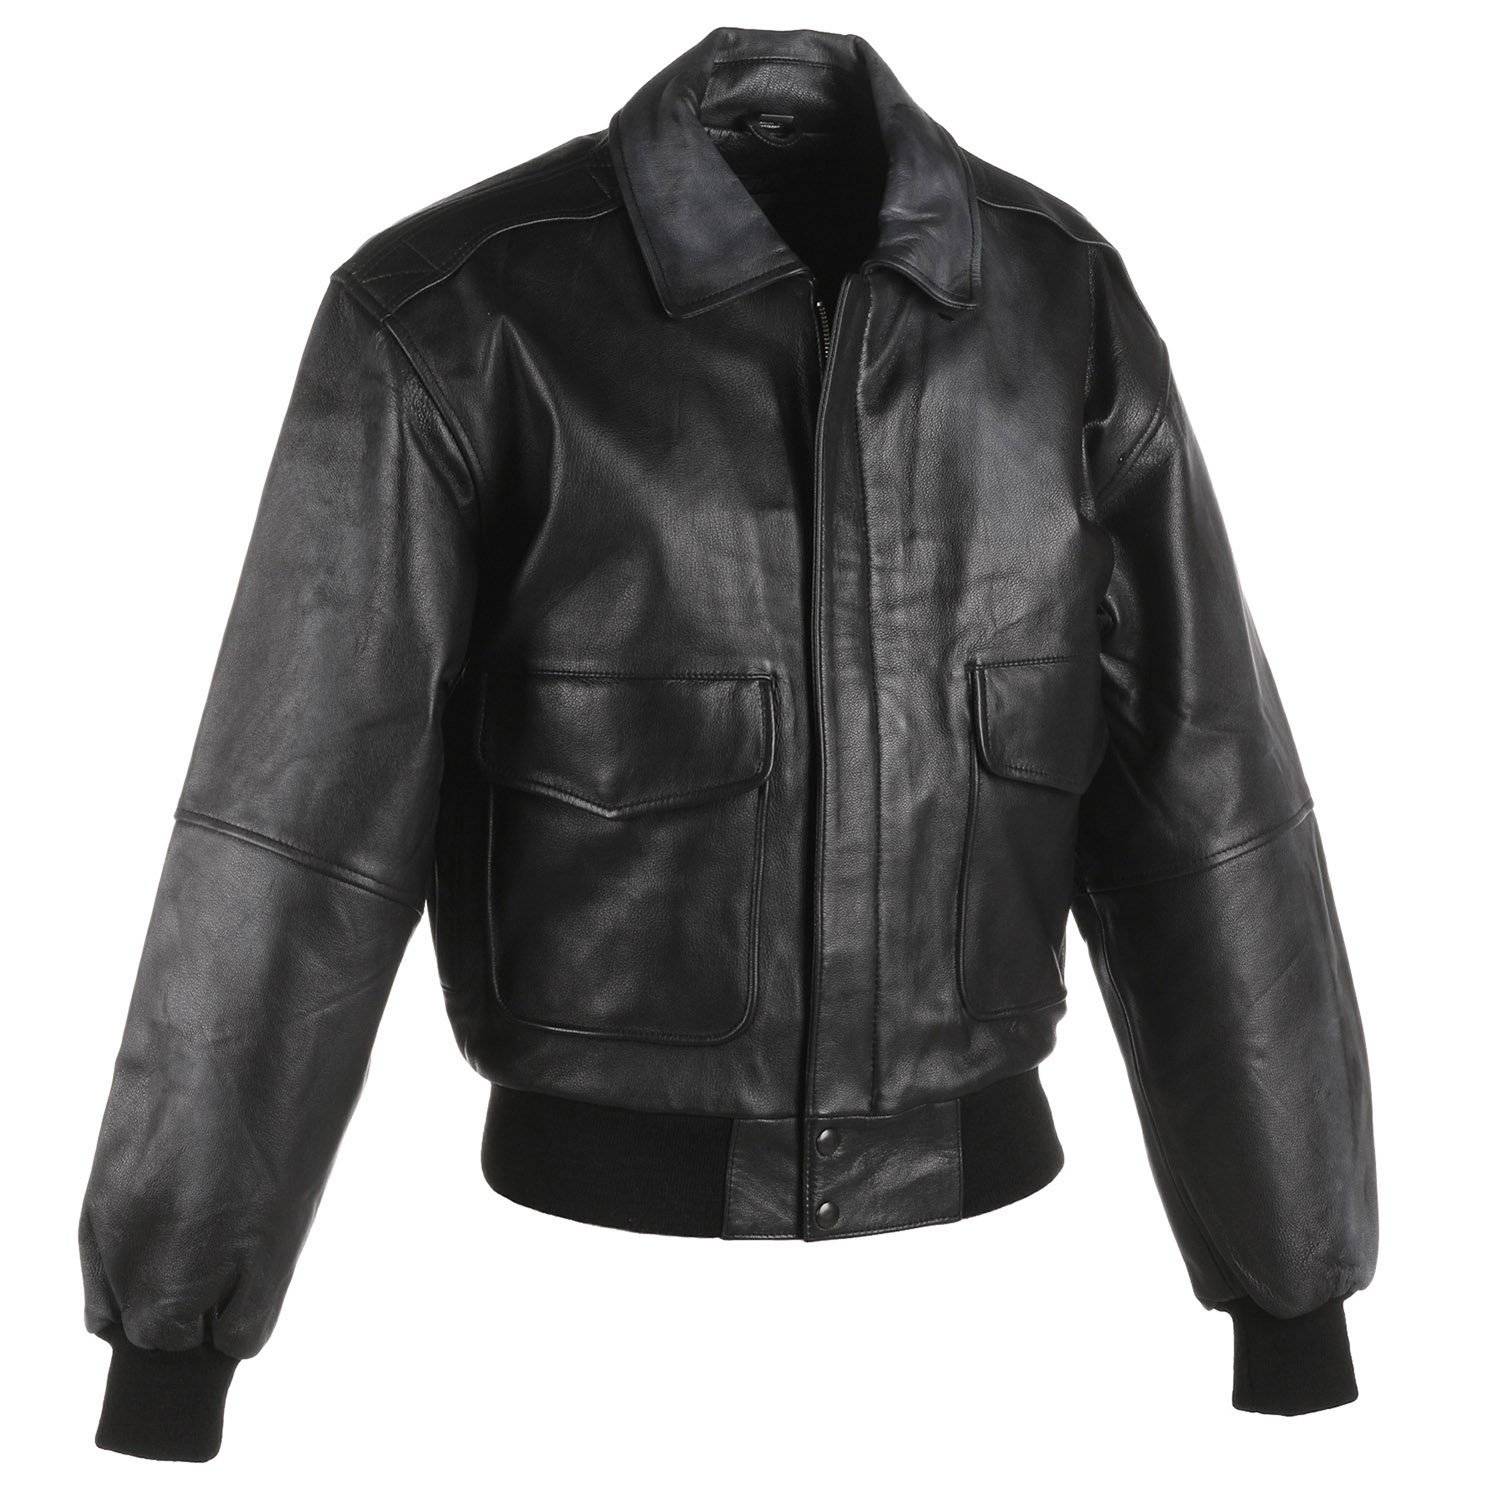 Taylor Leatherwear Goatskin Leather Bomber Jacket